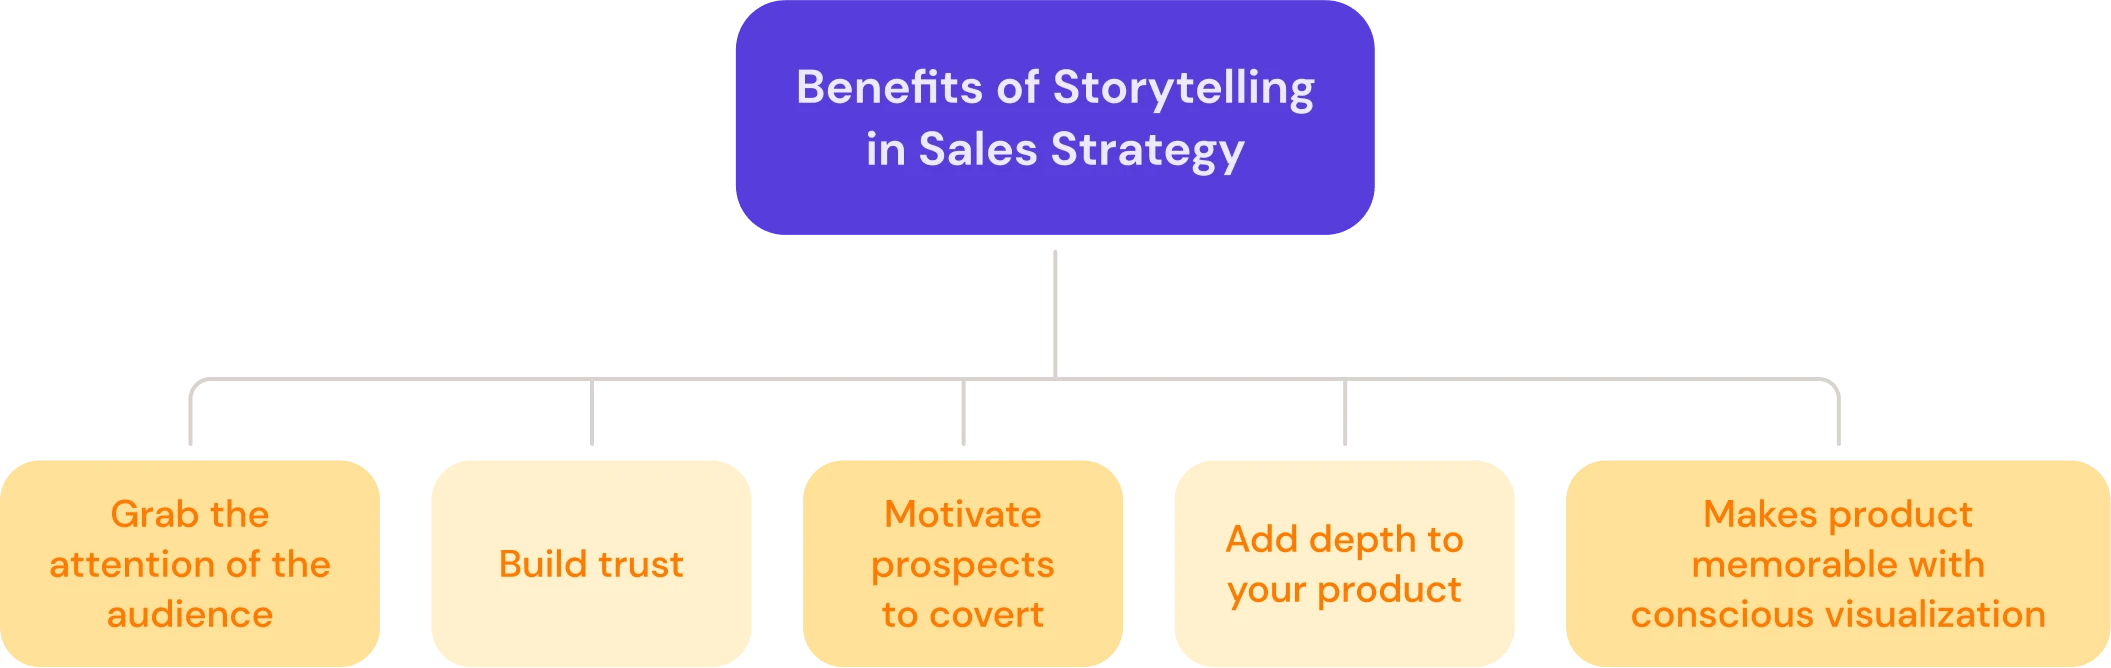 Benefits of storytelling